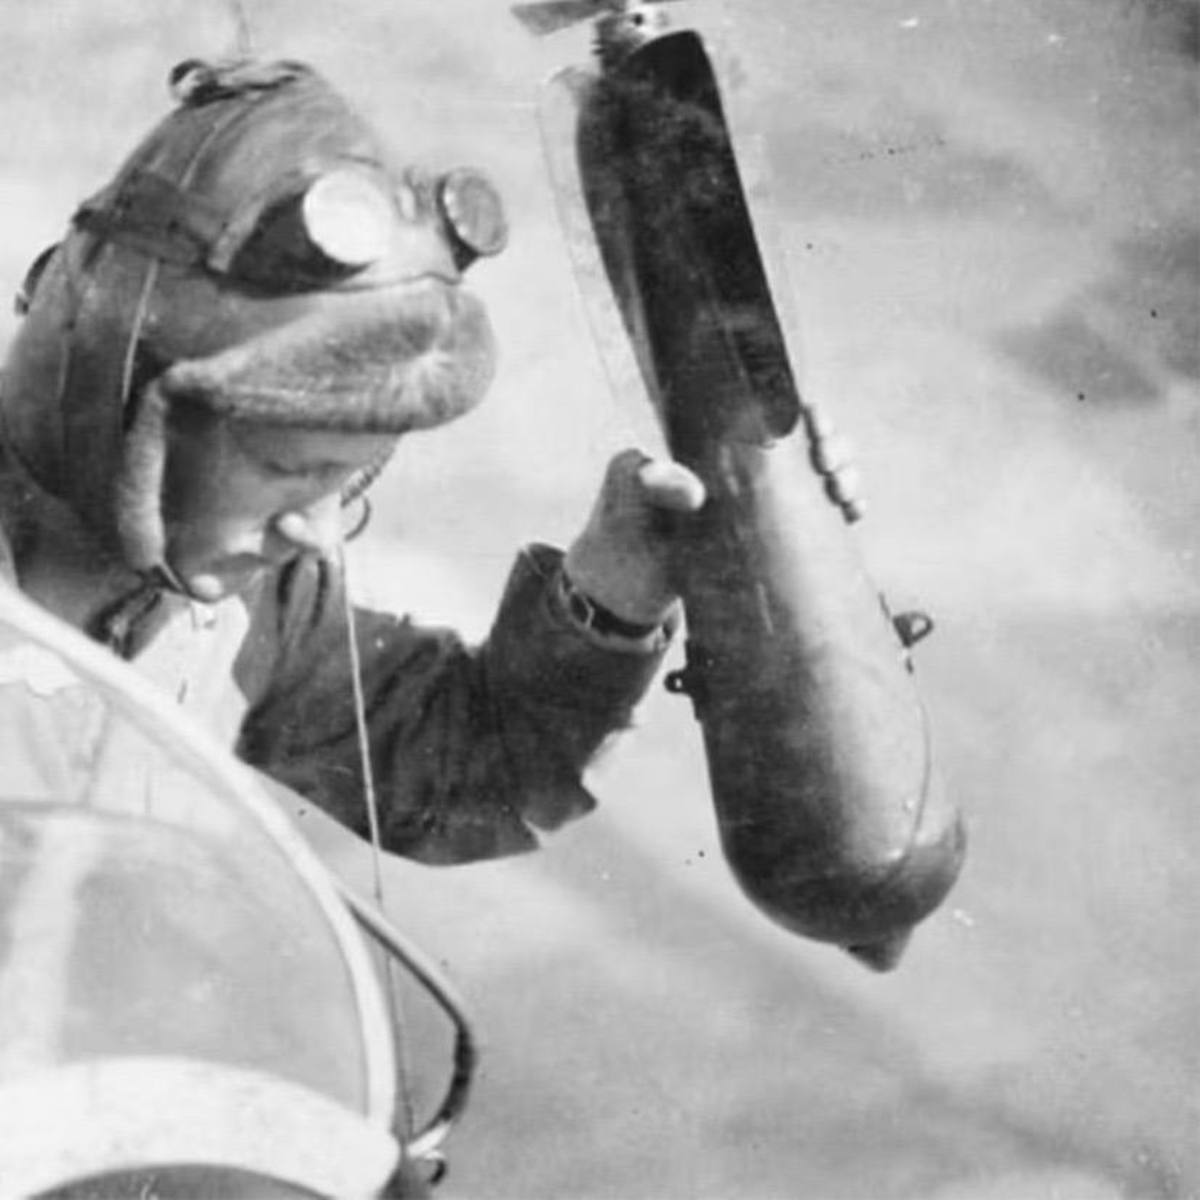 عکسی قدیمی مربوط به جنگ جهانی اول؛ کمک خلبان برای رهاکردن بمب آماده می‌شود